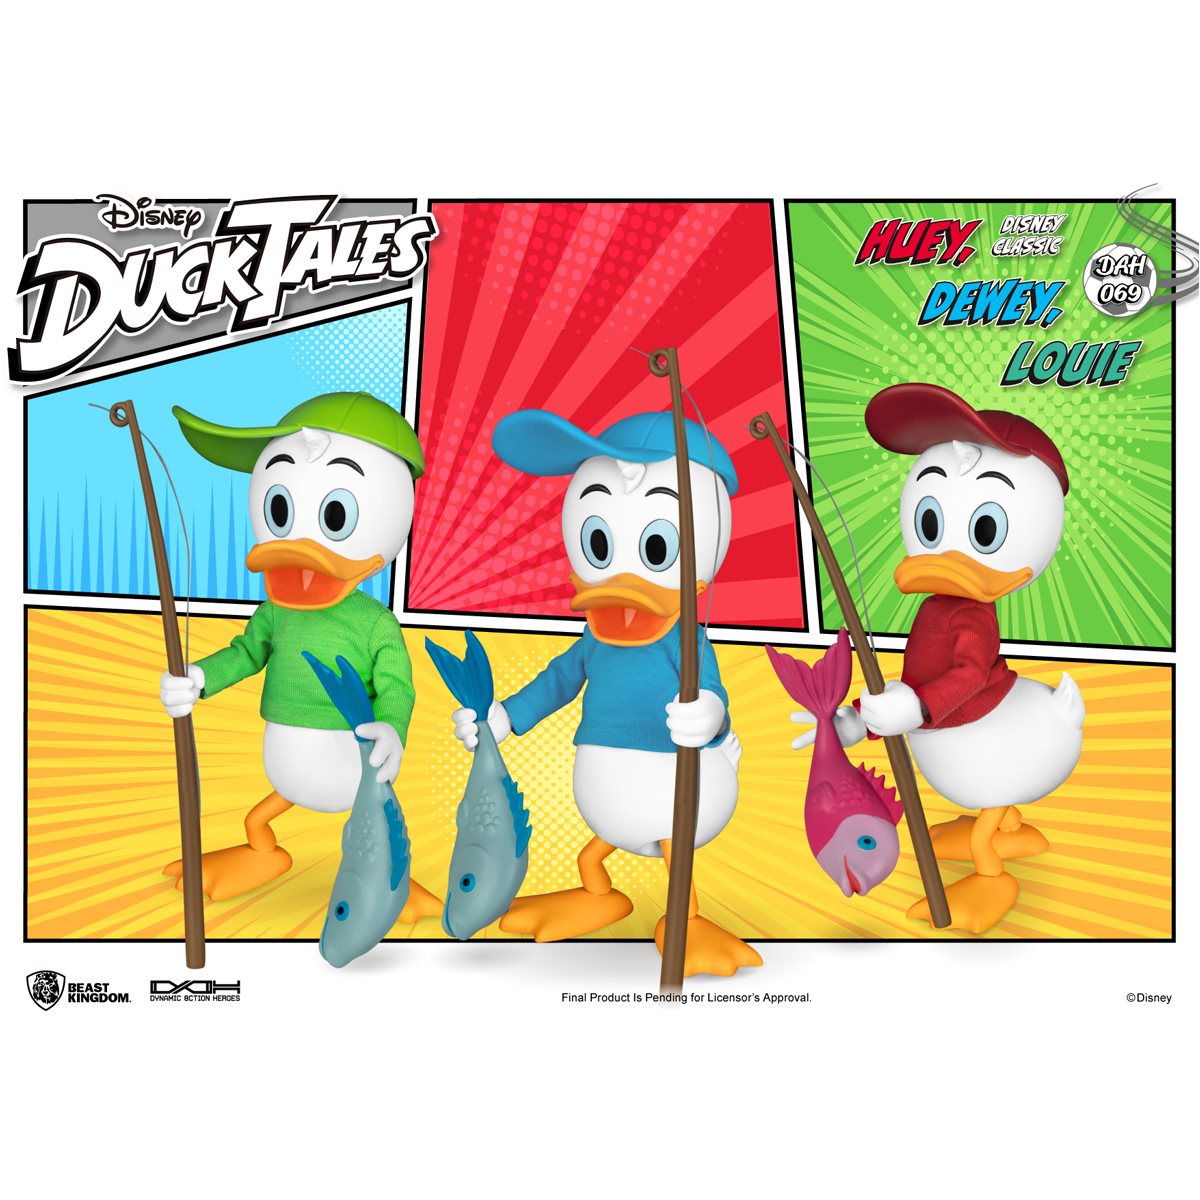 DuckTales Dynamic 8ction Heroes DAH-069 Huey, Dewey, & Louie Set of 3 Figures